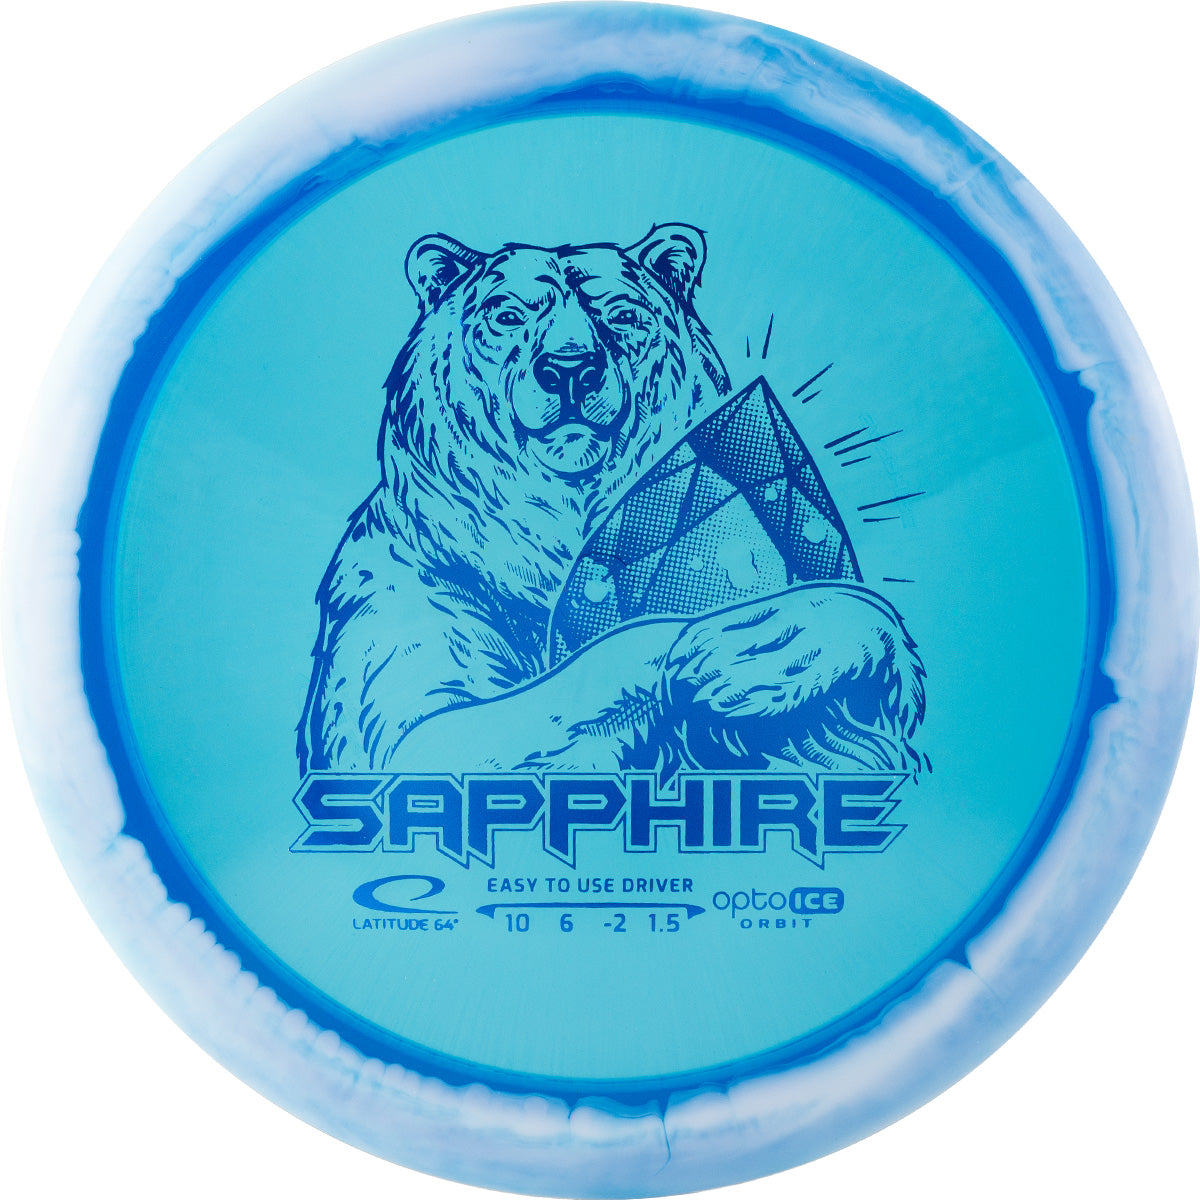 Latitude 64 Opto Ice Orbit Sapphire Disc